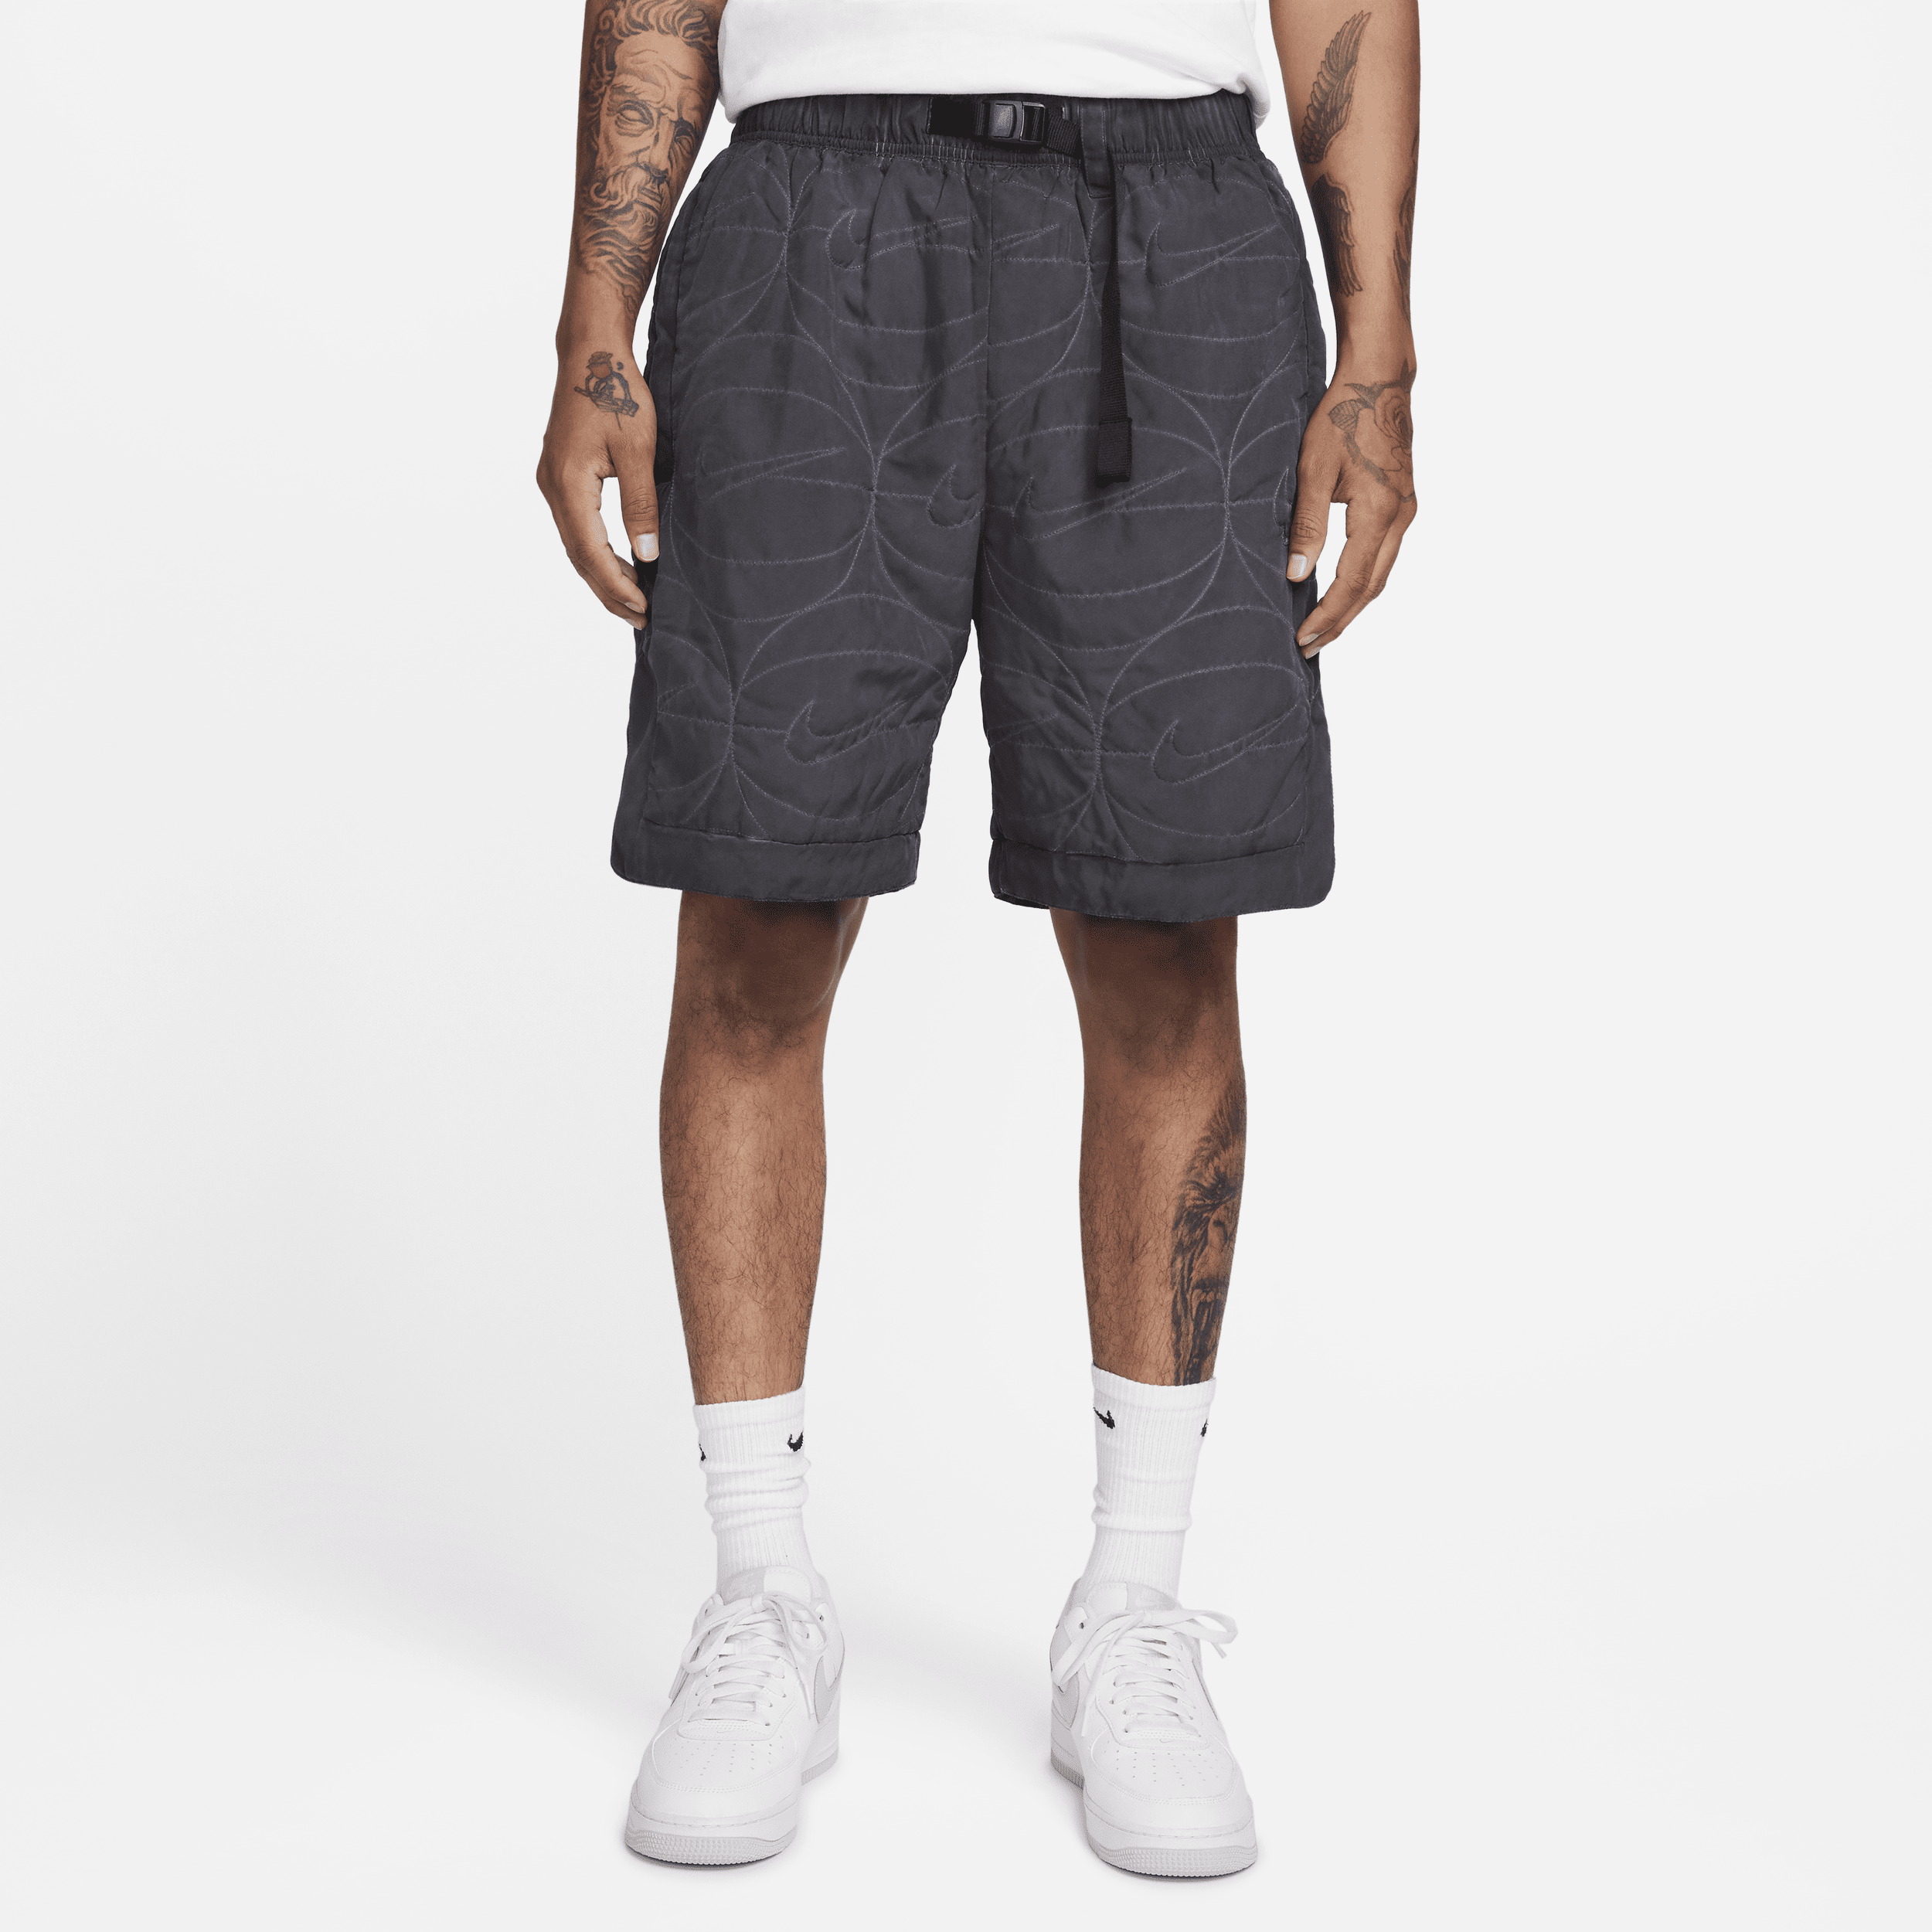 Nike geweven basketbalshorts met synthetische vulling voor heren (20 cm) - Zwart